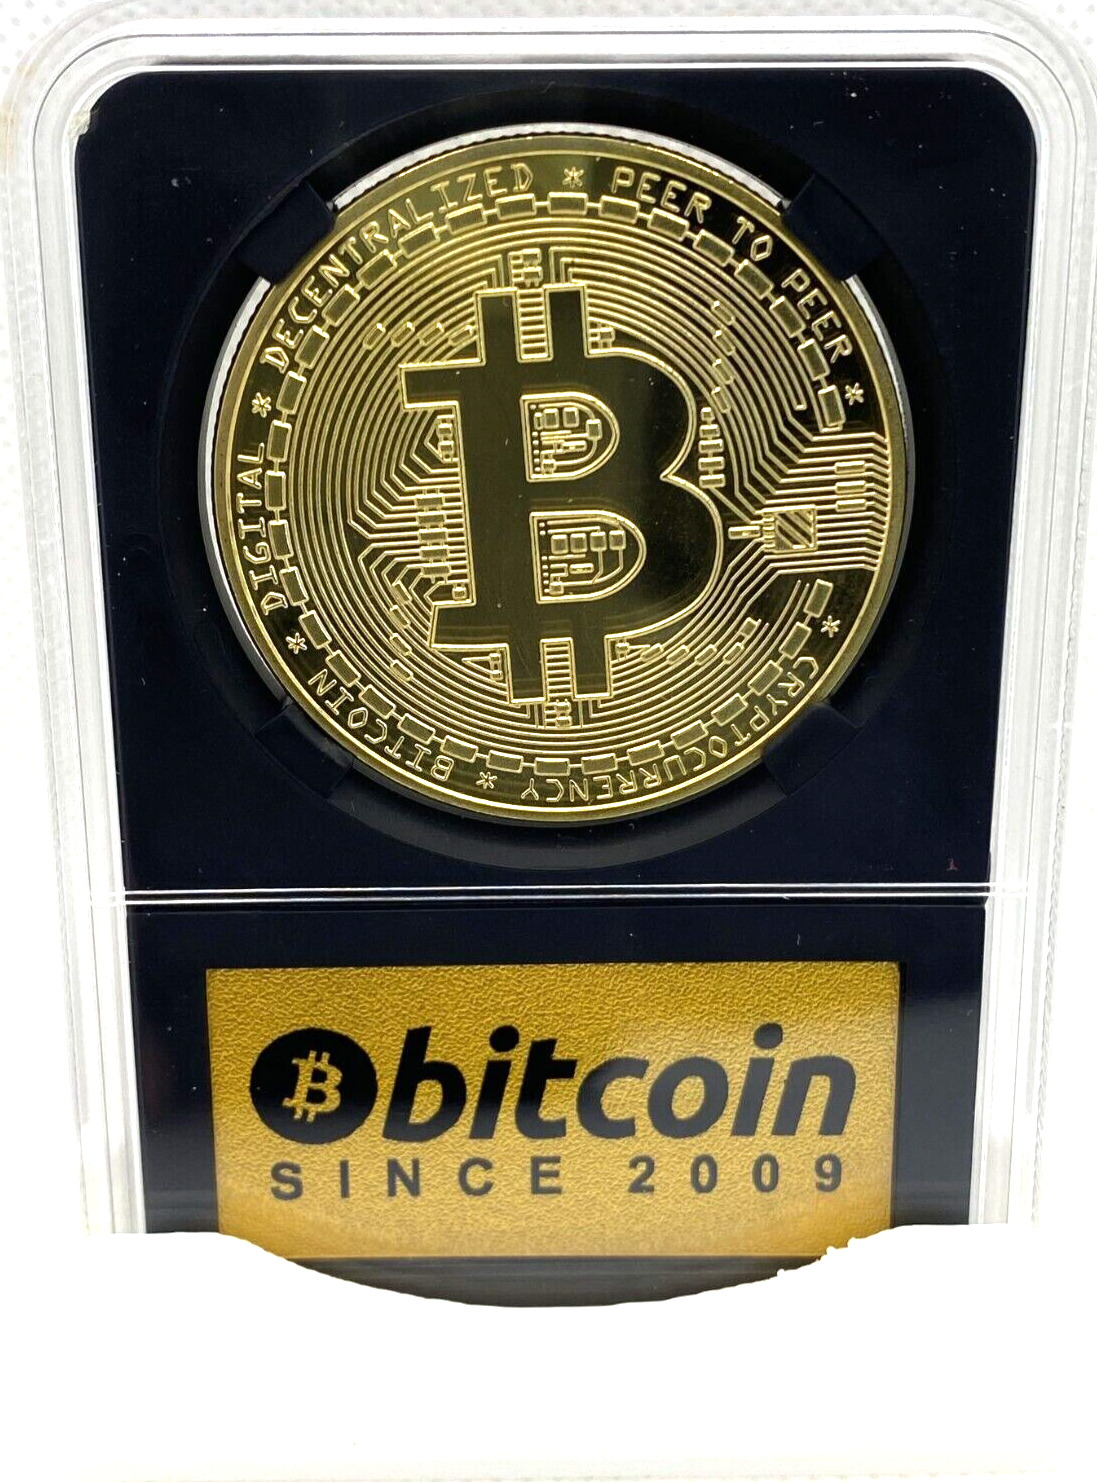 Bitcoin (BTC) Coin in Collector’s Edition Case - Physical Crypto Coin-1pc